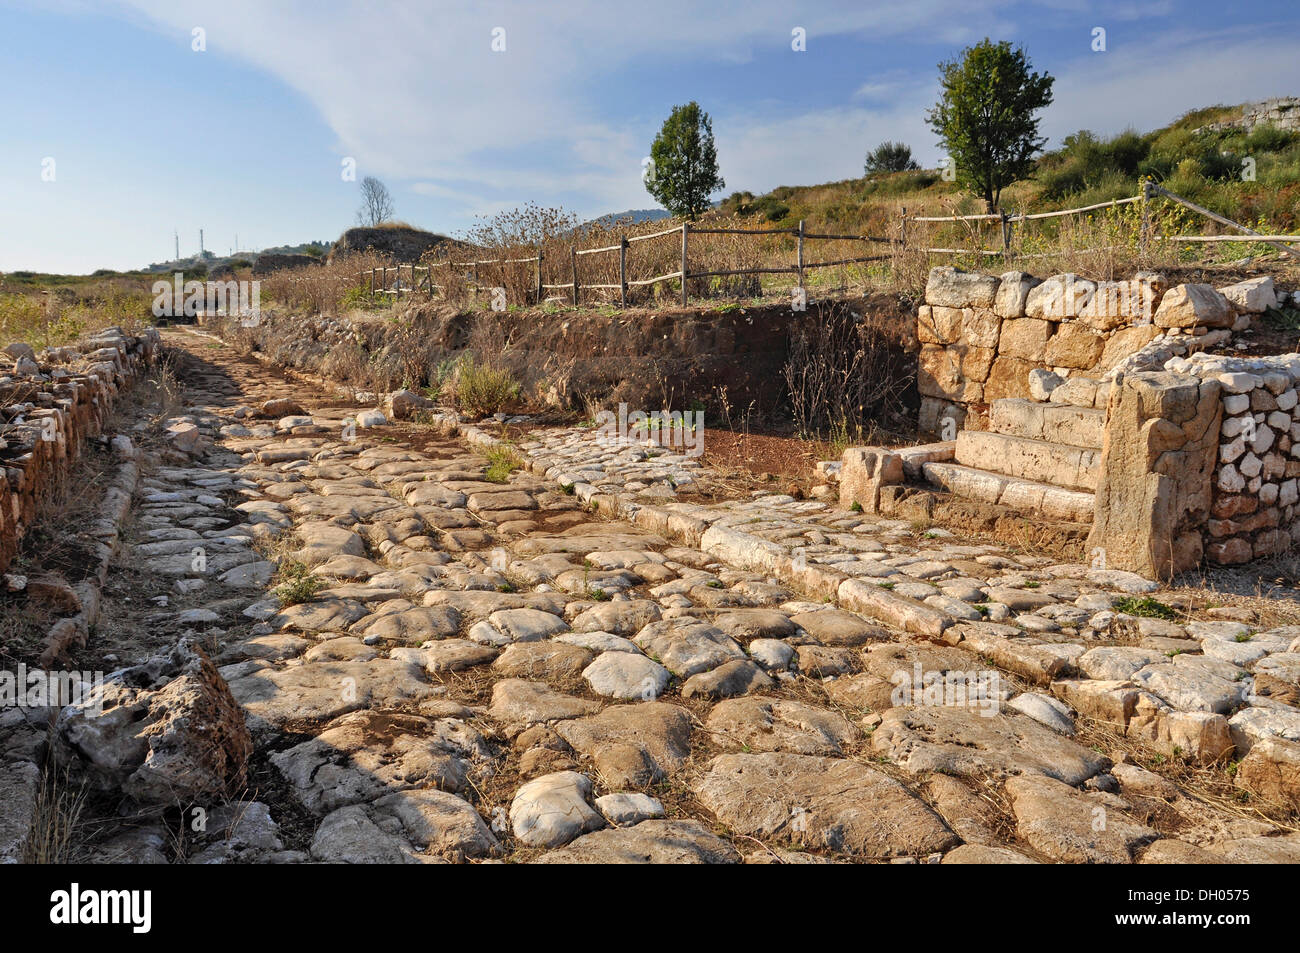 Calle adoquinada con pavimento y restos de una casa, un sitio arqueológico de la antigua ciudad romana de Norba, Siglo IV A.C. Foto de stock